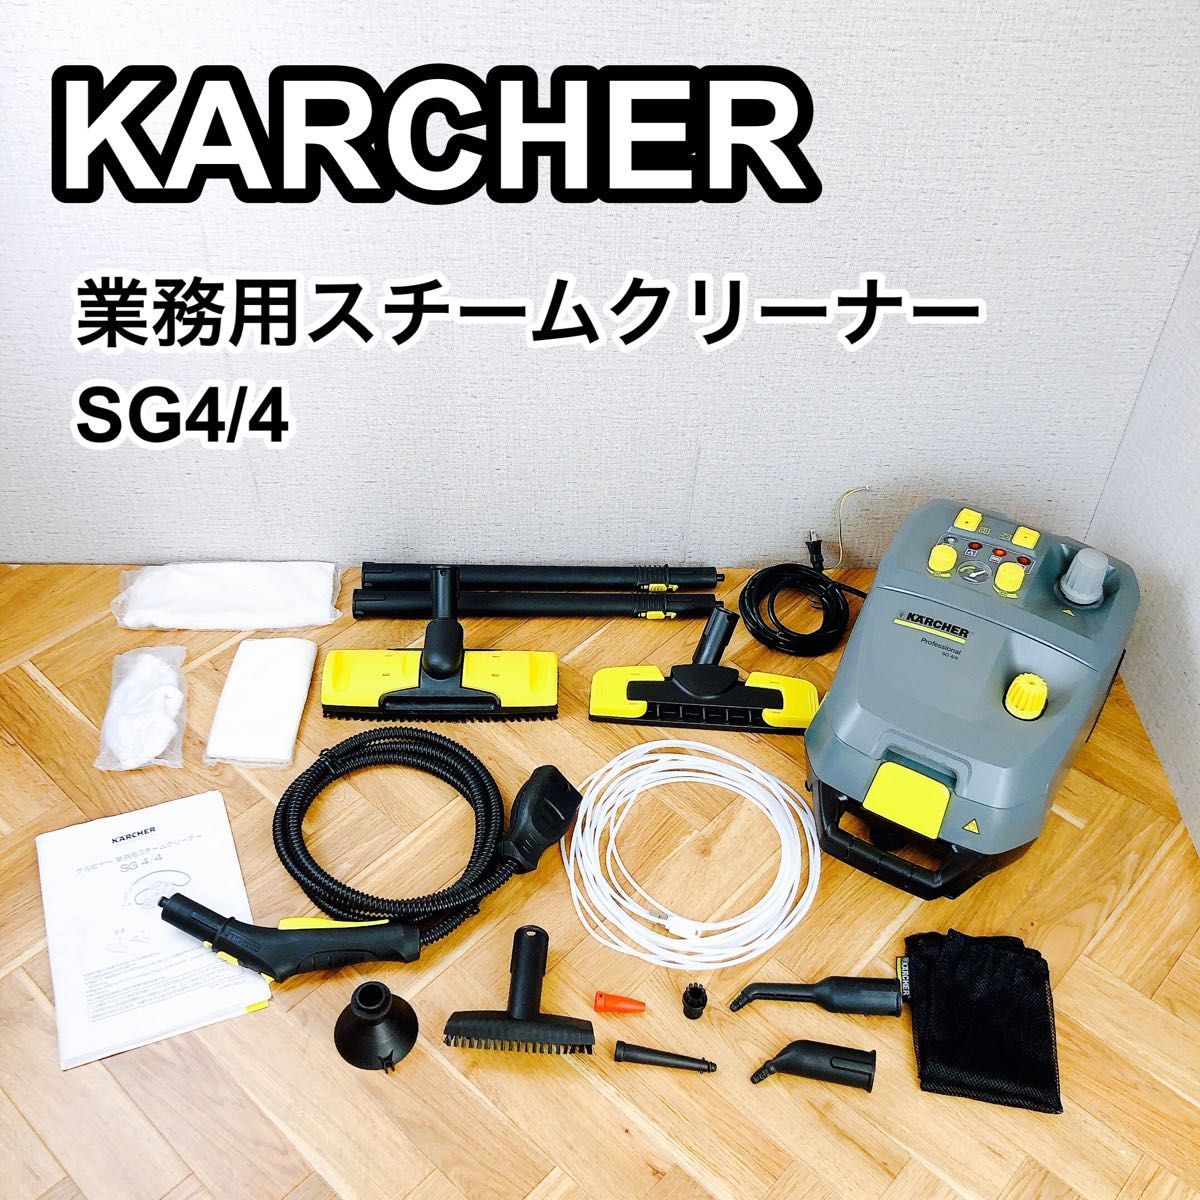 はこぽす対応商品】 KARCHER ケルヒャー 業務用スチームクリーナー SG4